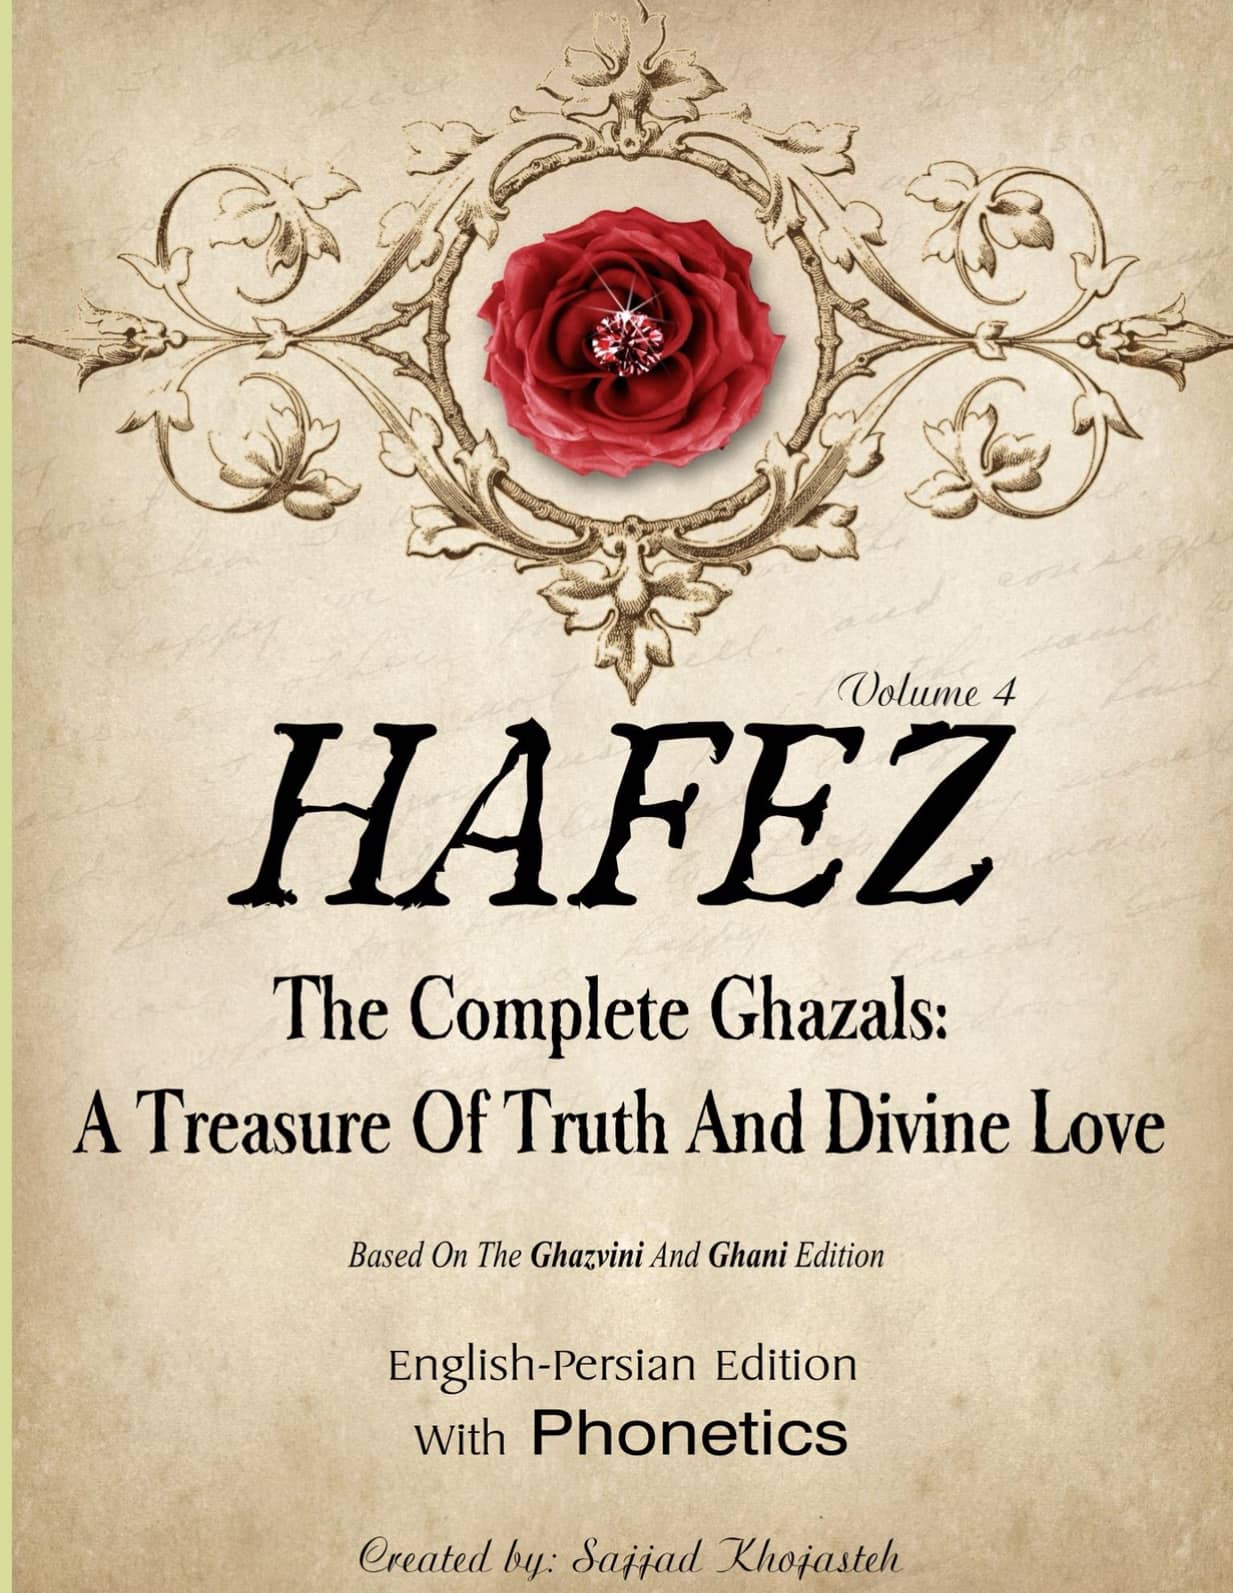 Hafez's poetry